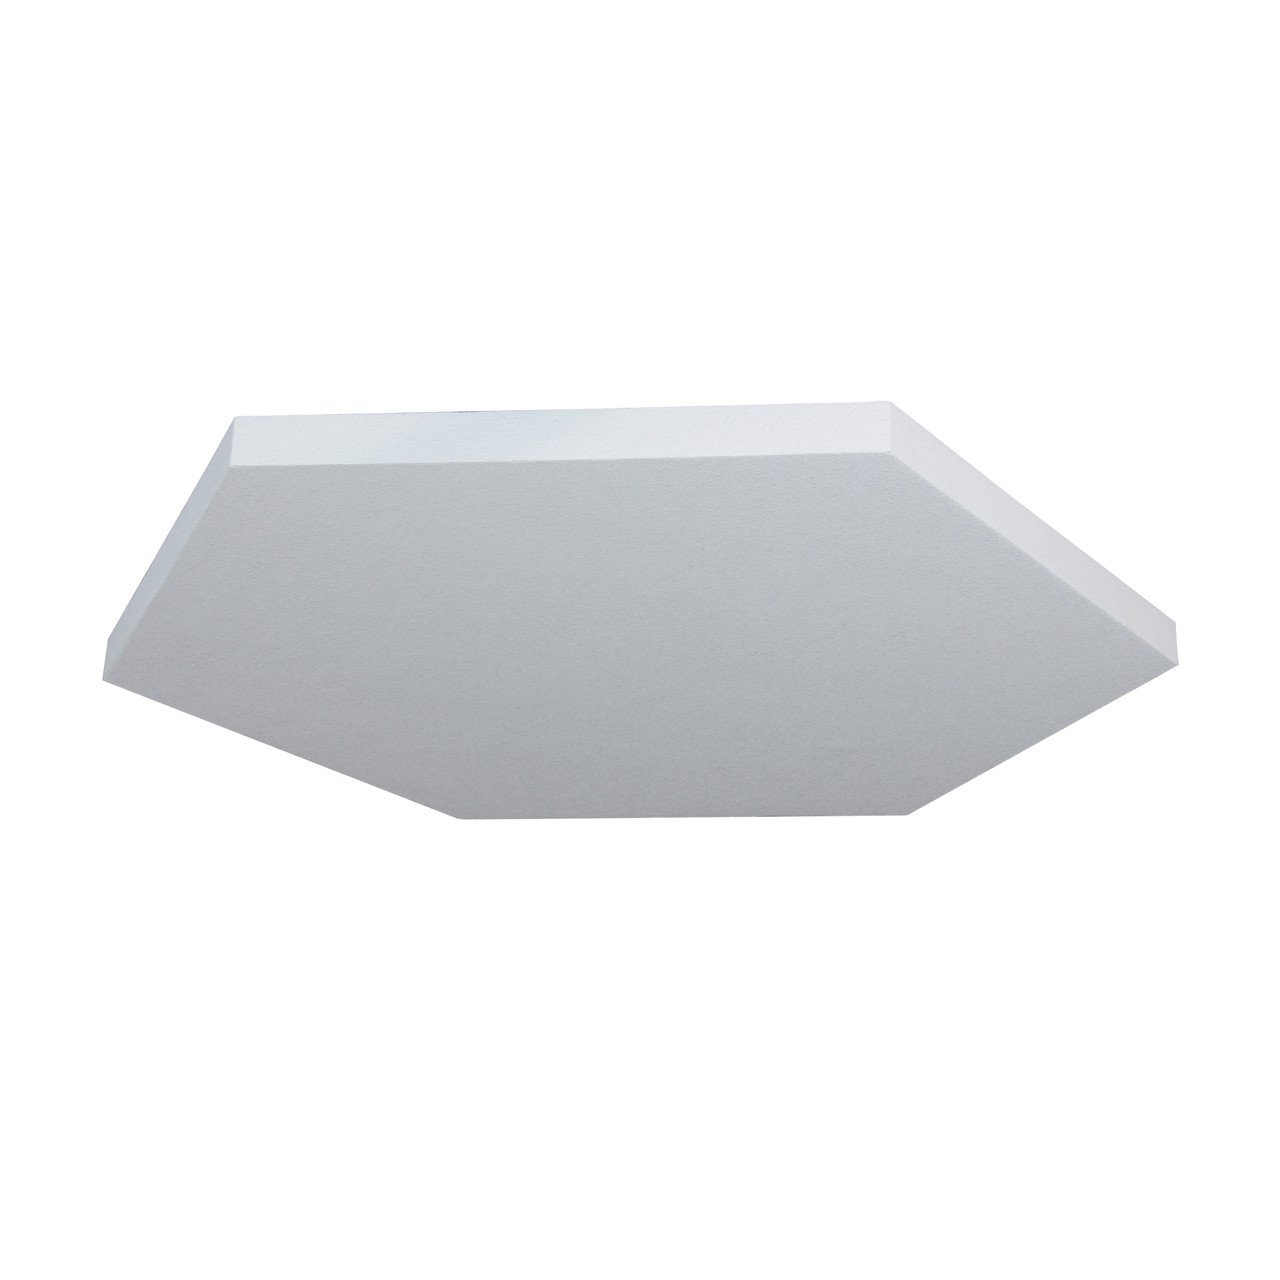 Ceiling Treatments - Primacoustic Hexus 36 Ceiling Acoustic Panel (914 X 914 X 38mm)